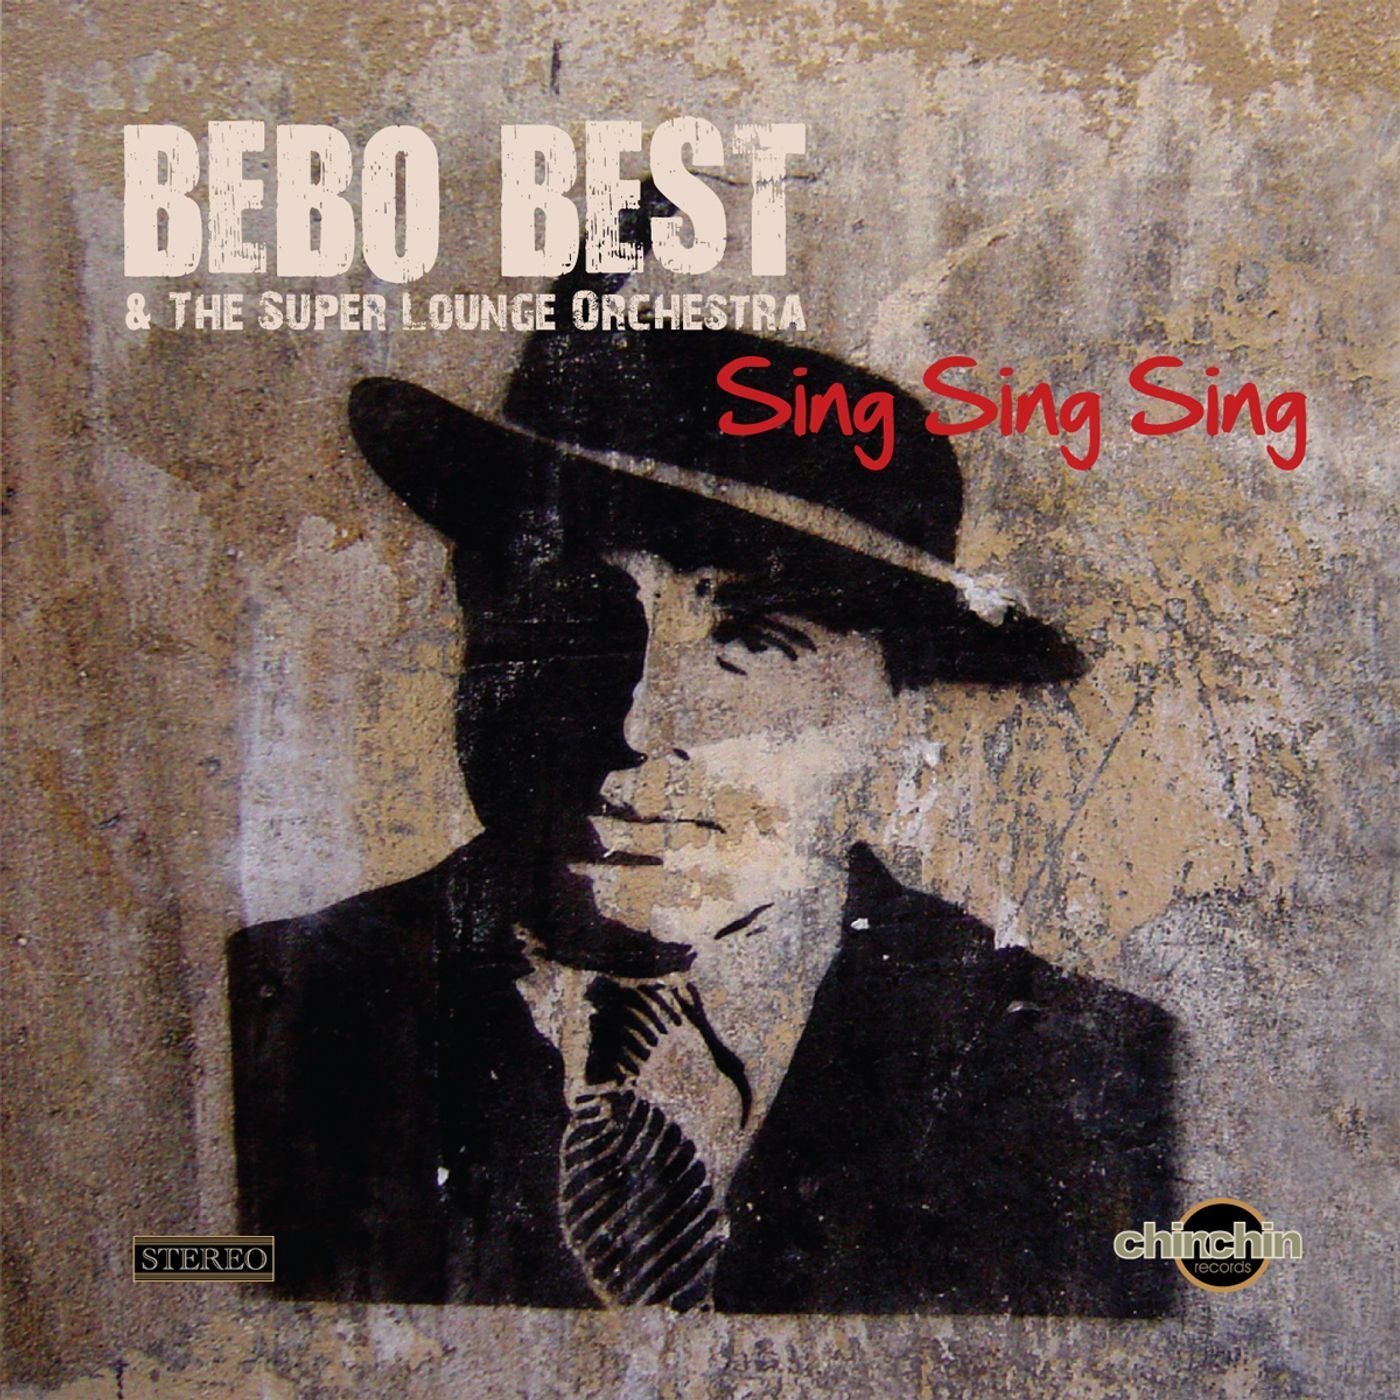 Sing sing sing remix. Bebo best the super Lounge Orchestra. Bebo best Sing Sing. Bebo best and the super Lounge Orchestra Sing Sing. Bebo best & the super Lounge Orchestra - Sing Sing Sing (Dance Video).